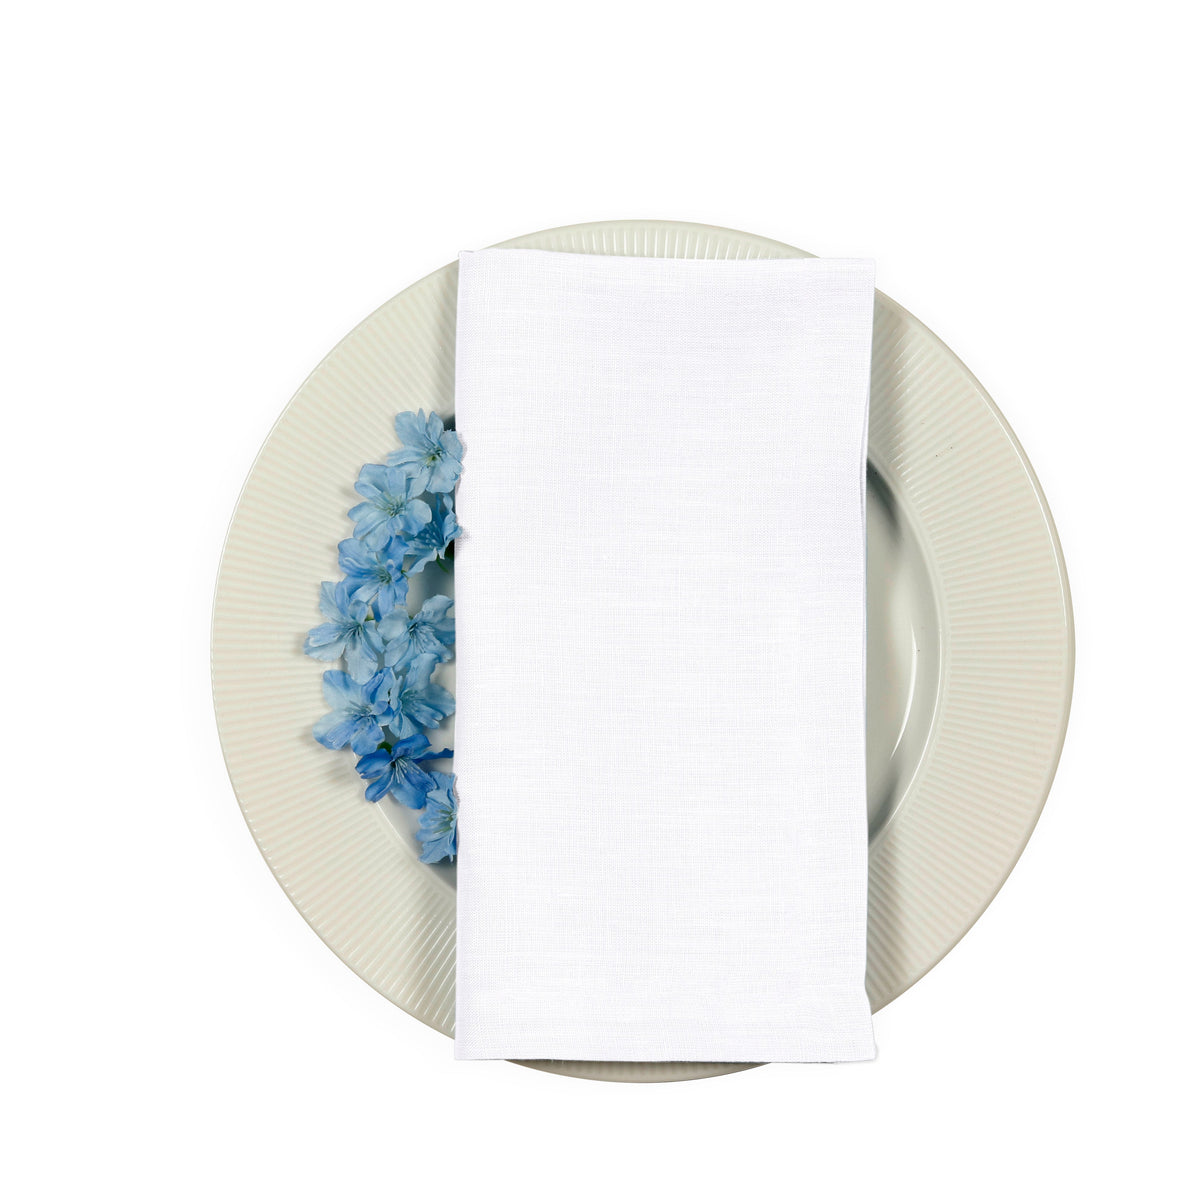 White Linen Dinner Napkins 17 x 17 Inch Set of 4 - Hemmed